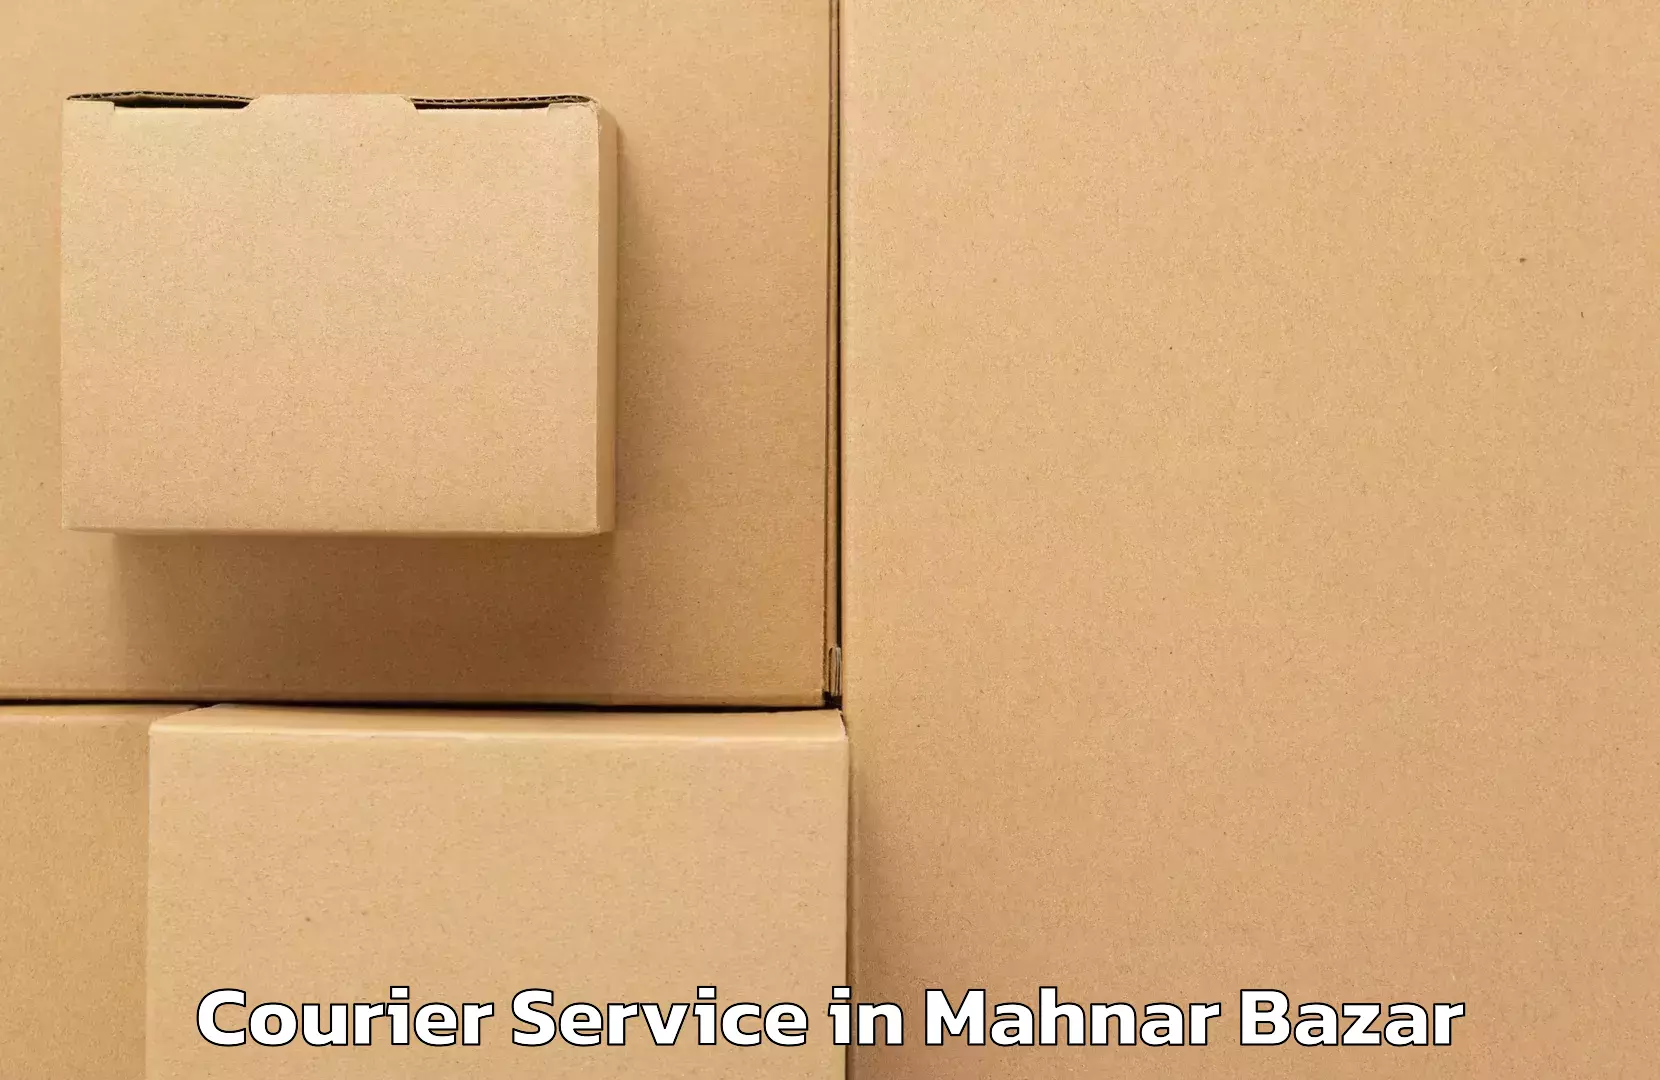 E-commerce fulfillment in Mahnar Bazar